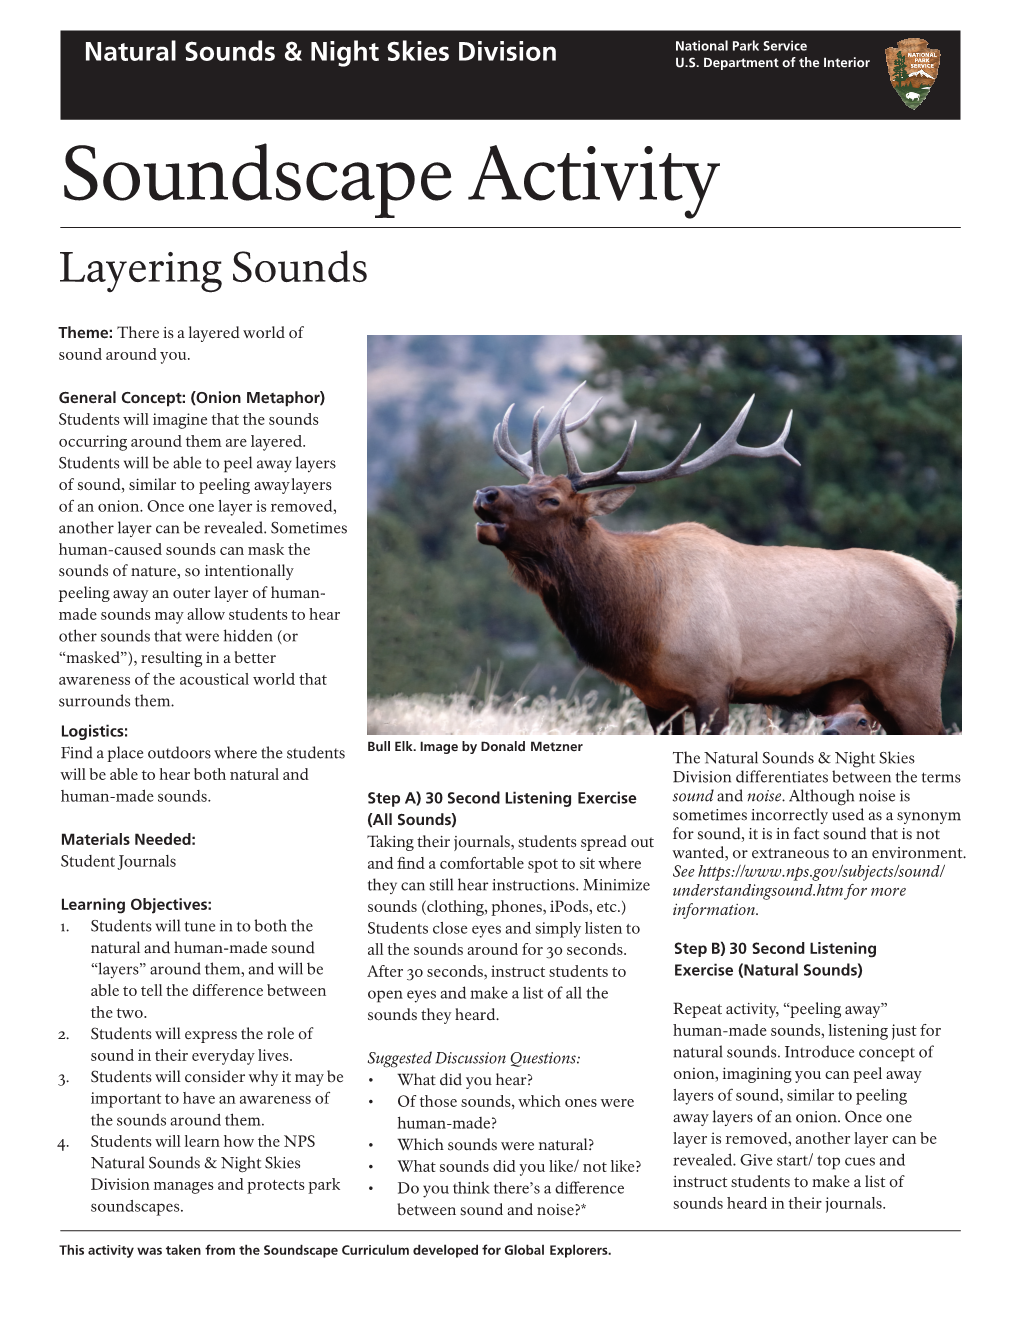 Soundscape Activity: Layering Sounds